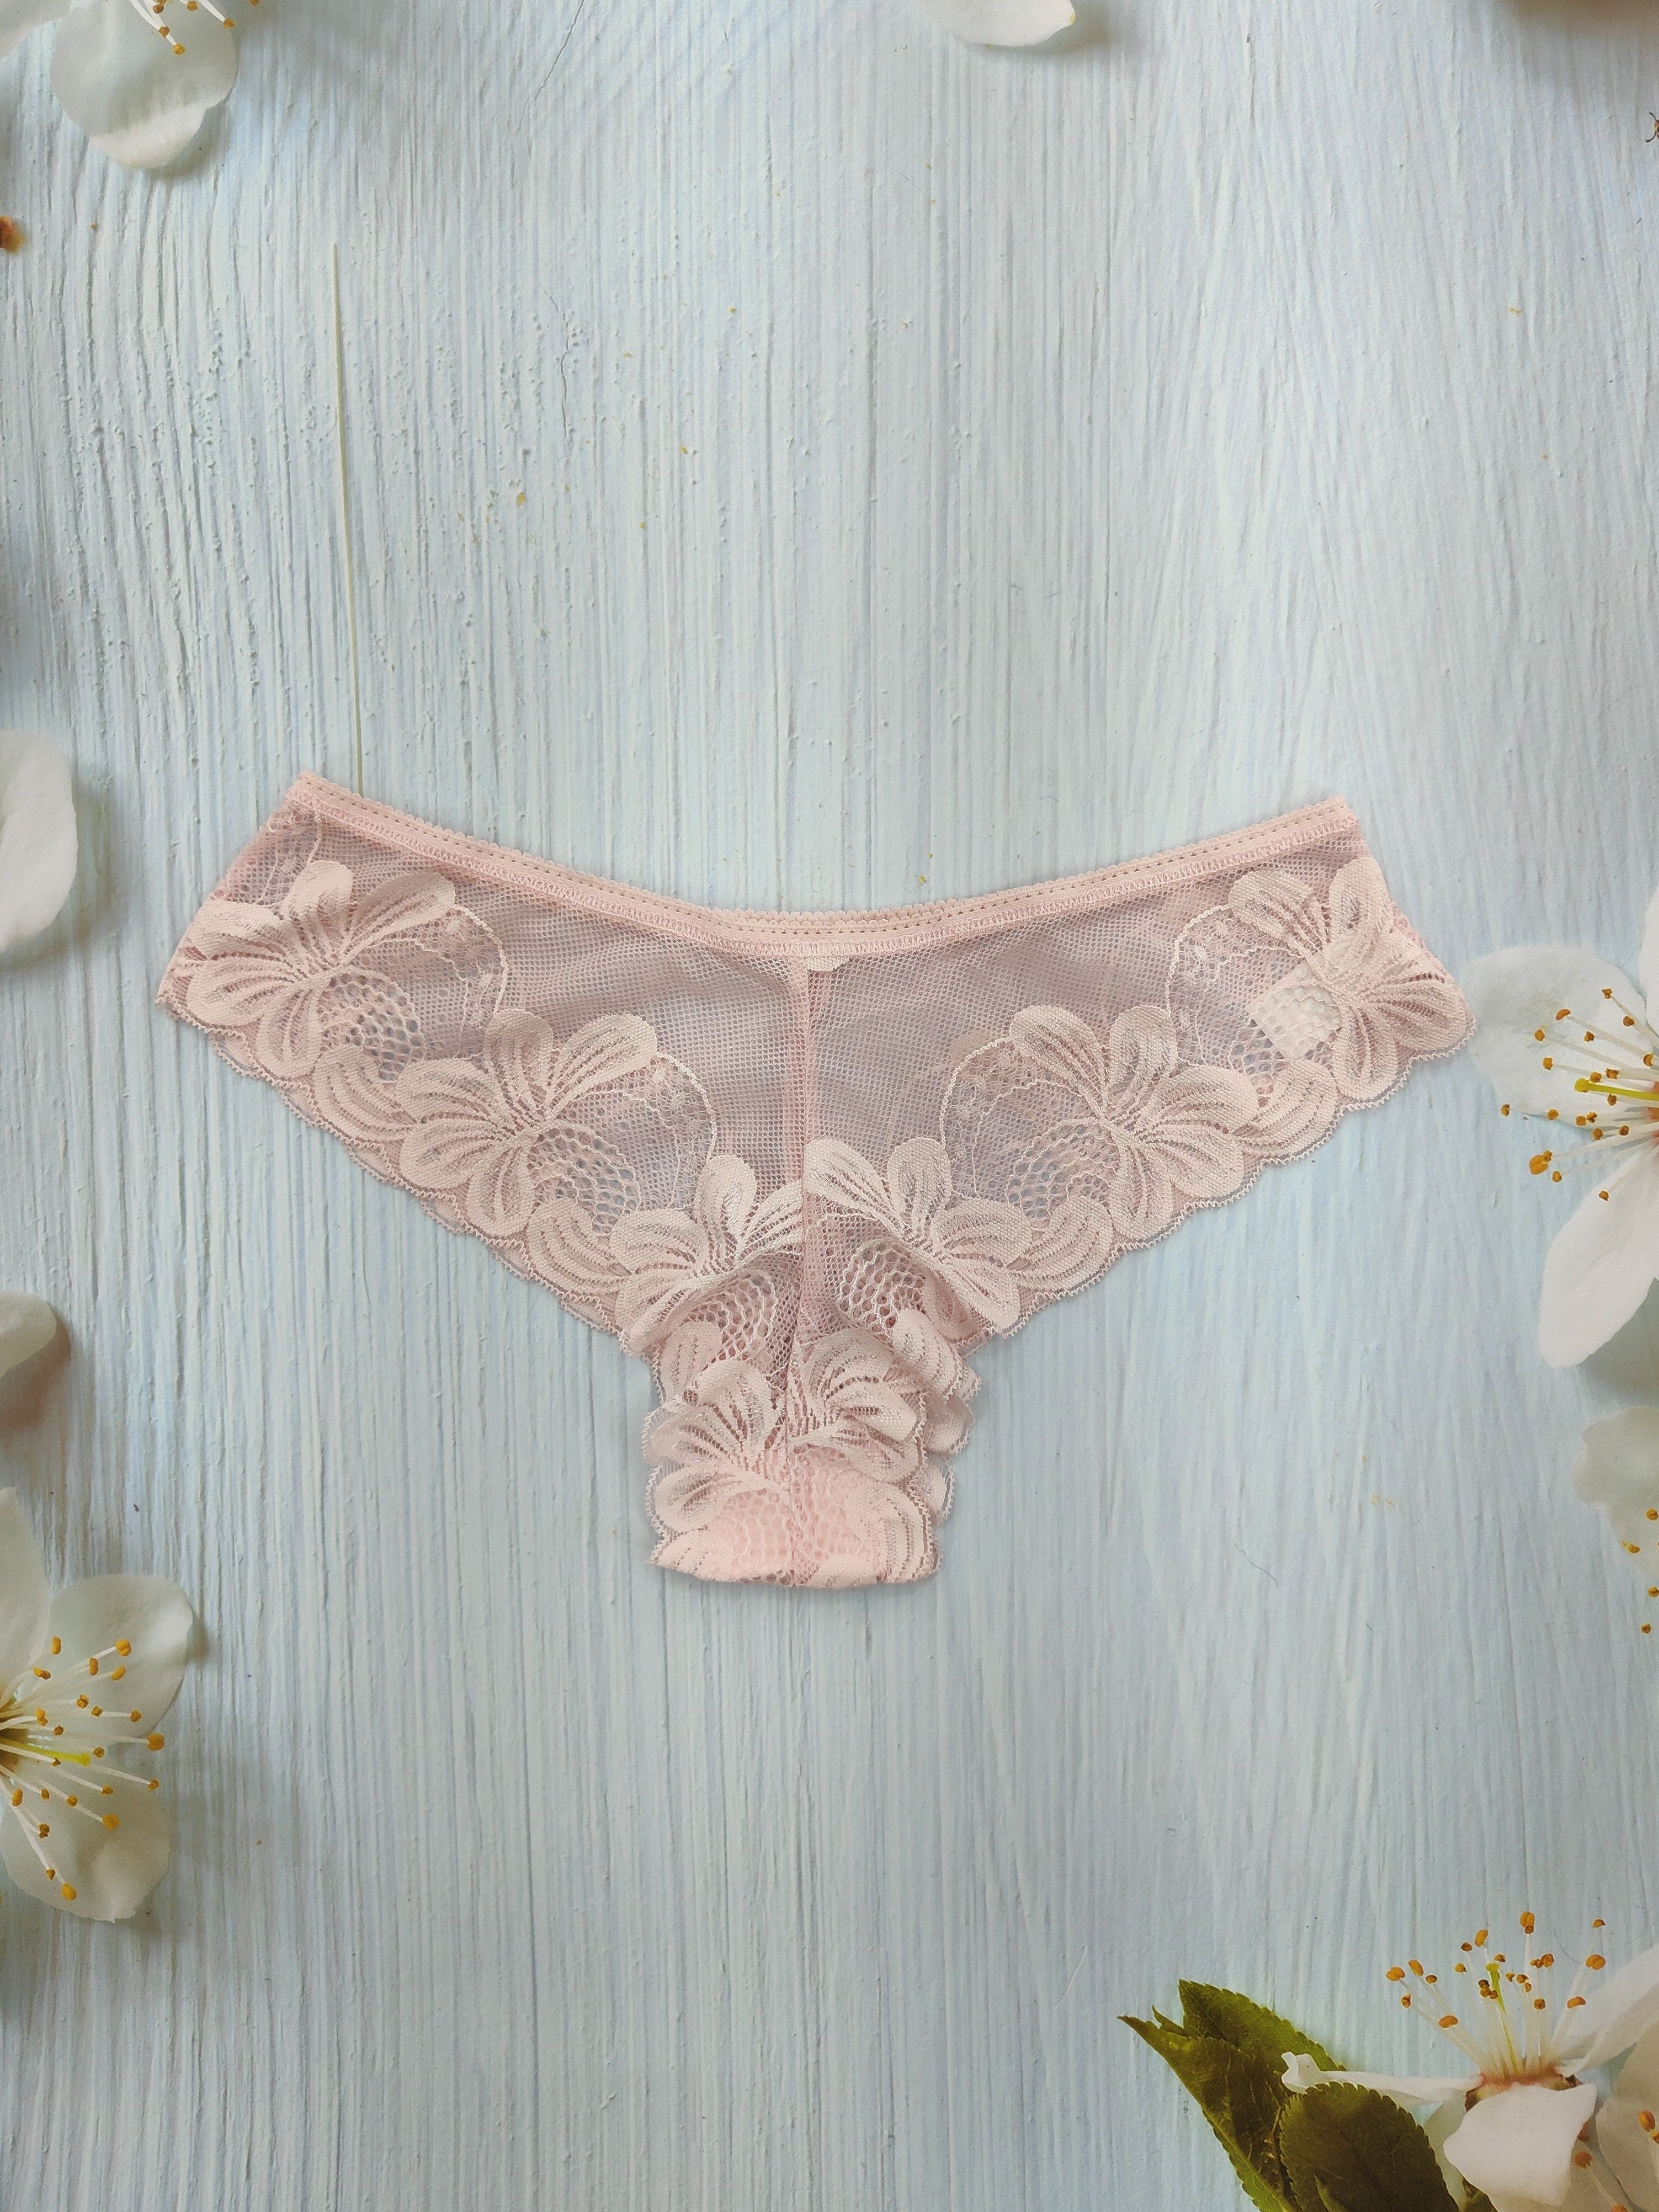 3pcs Floral Lace Briefs, Comfy & Breathable Scallop Trim Intimates Panties,  Women's Lingerie & Underwear